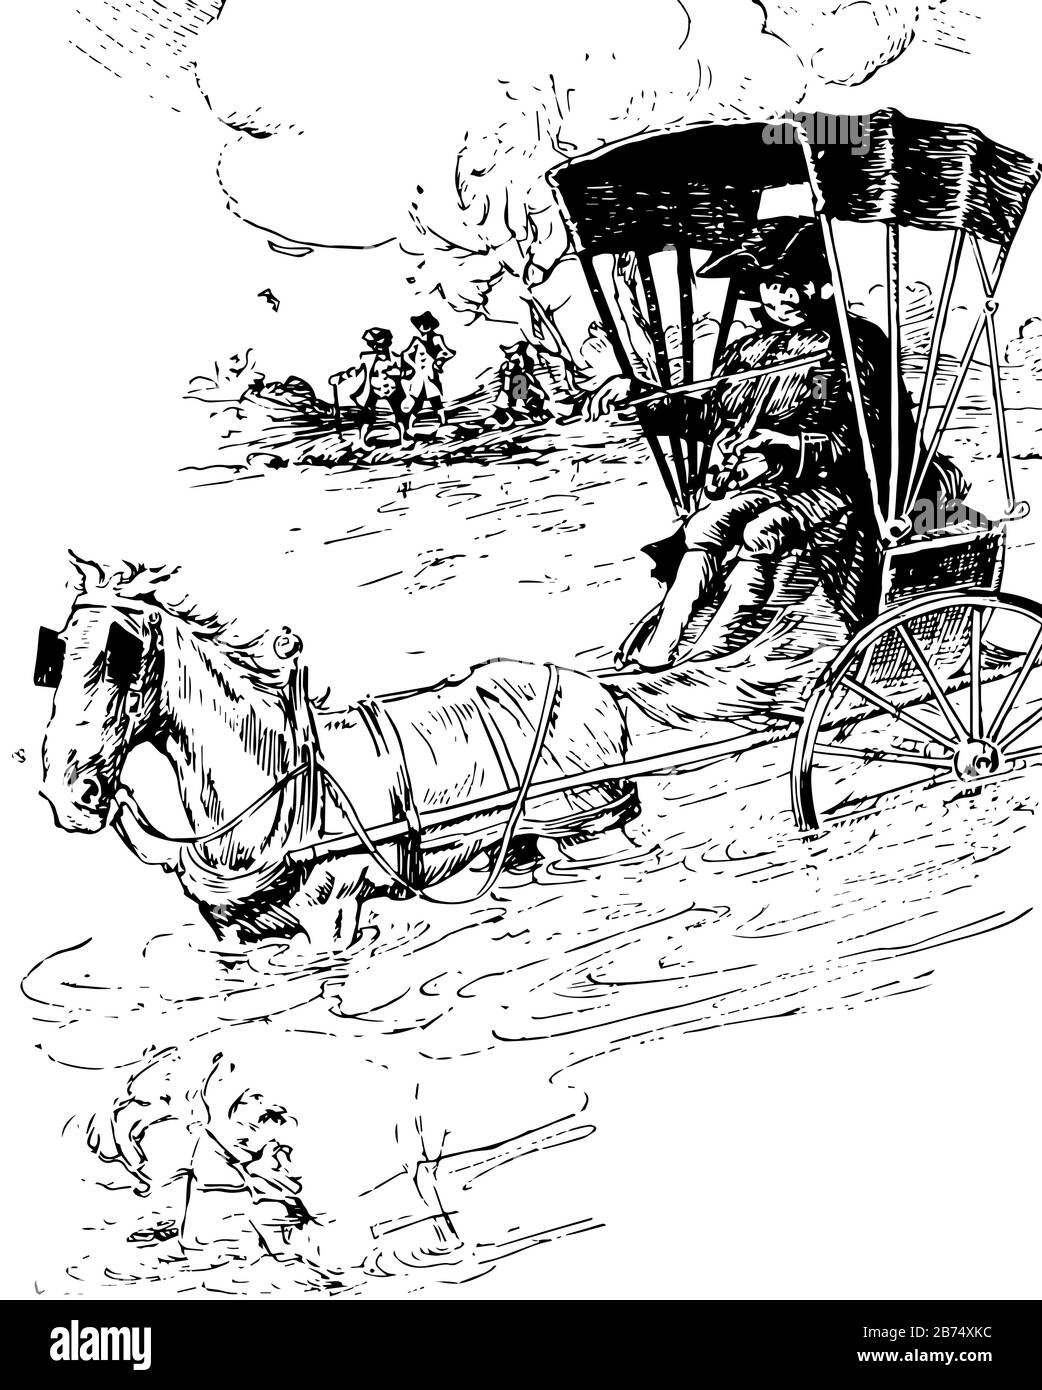 Fiddling Parson, cette scène montre un violon dans un chariot à cheval allant dans l'eau et jouant au violon, des gens en arrière-plan, des dessins vintage ou e Illustration de Vecteur